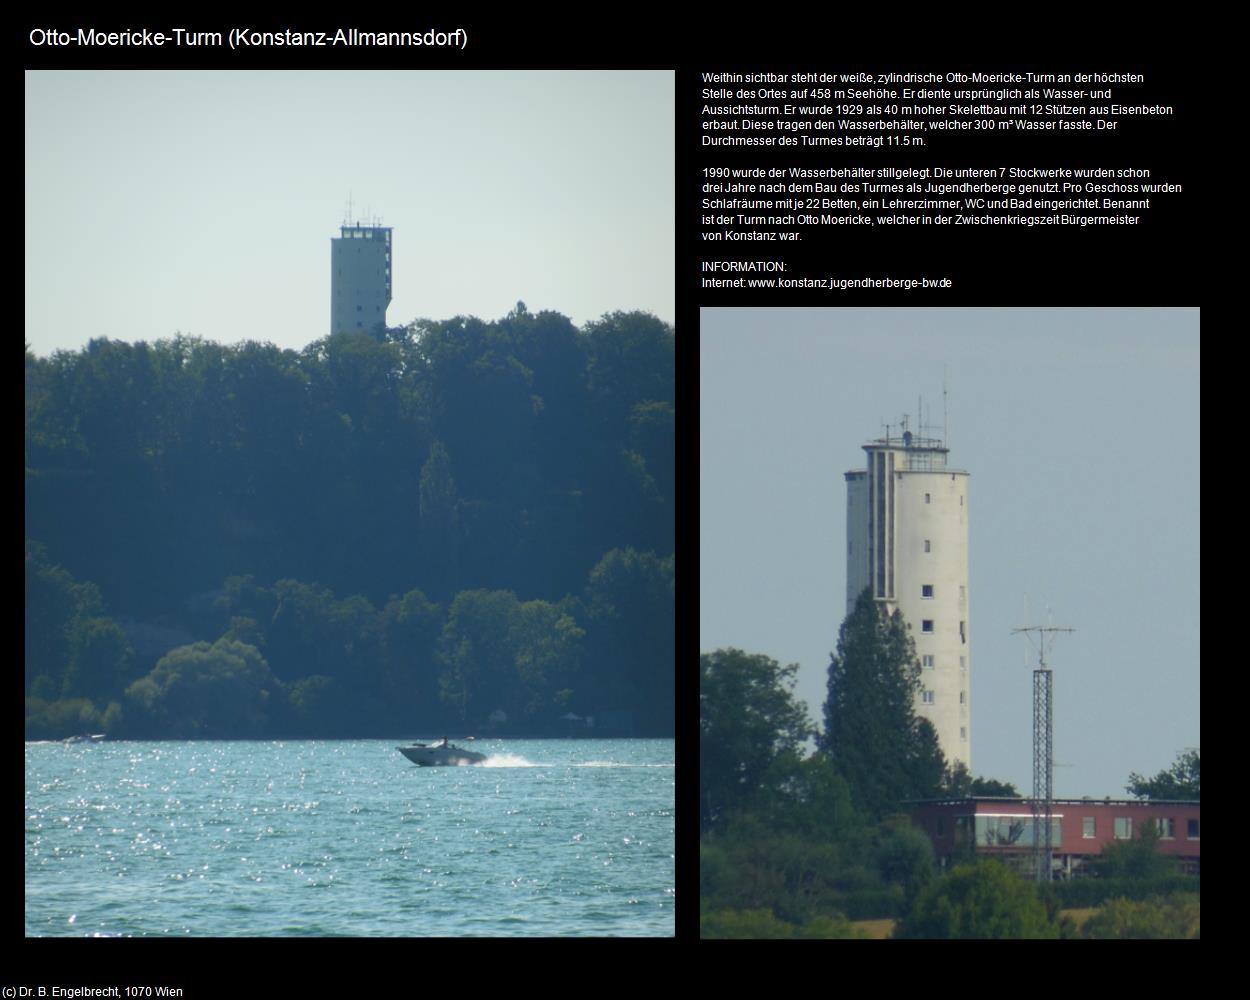 Otto-Moericke-Turm (Allmannsdorf)  (Konstanz) in Kulturatlas-BADEN-WÜRTTEMBERG